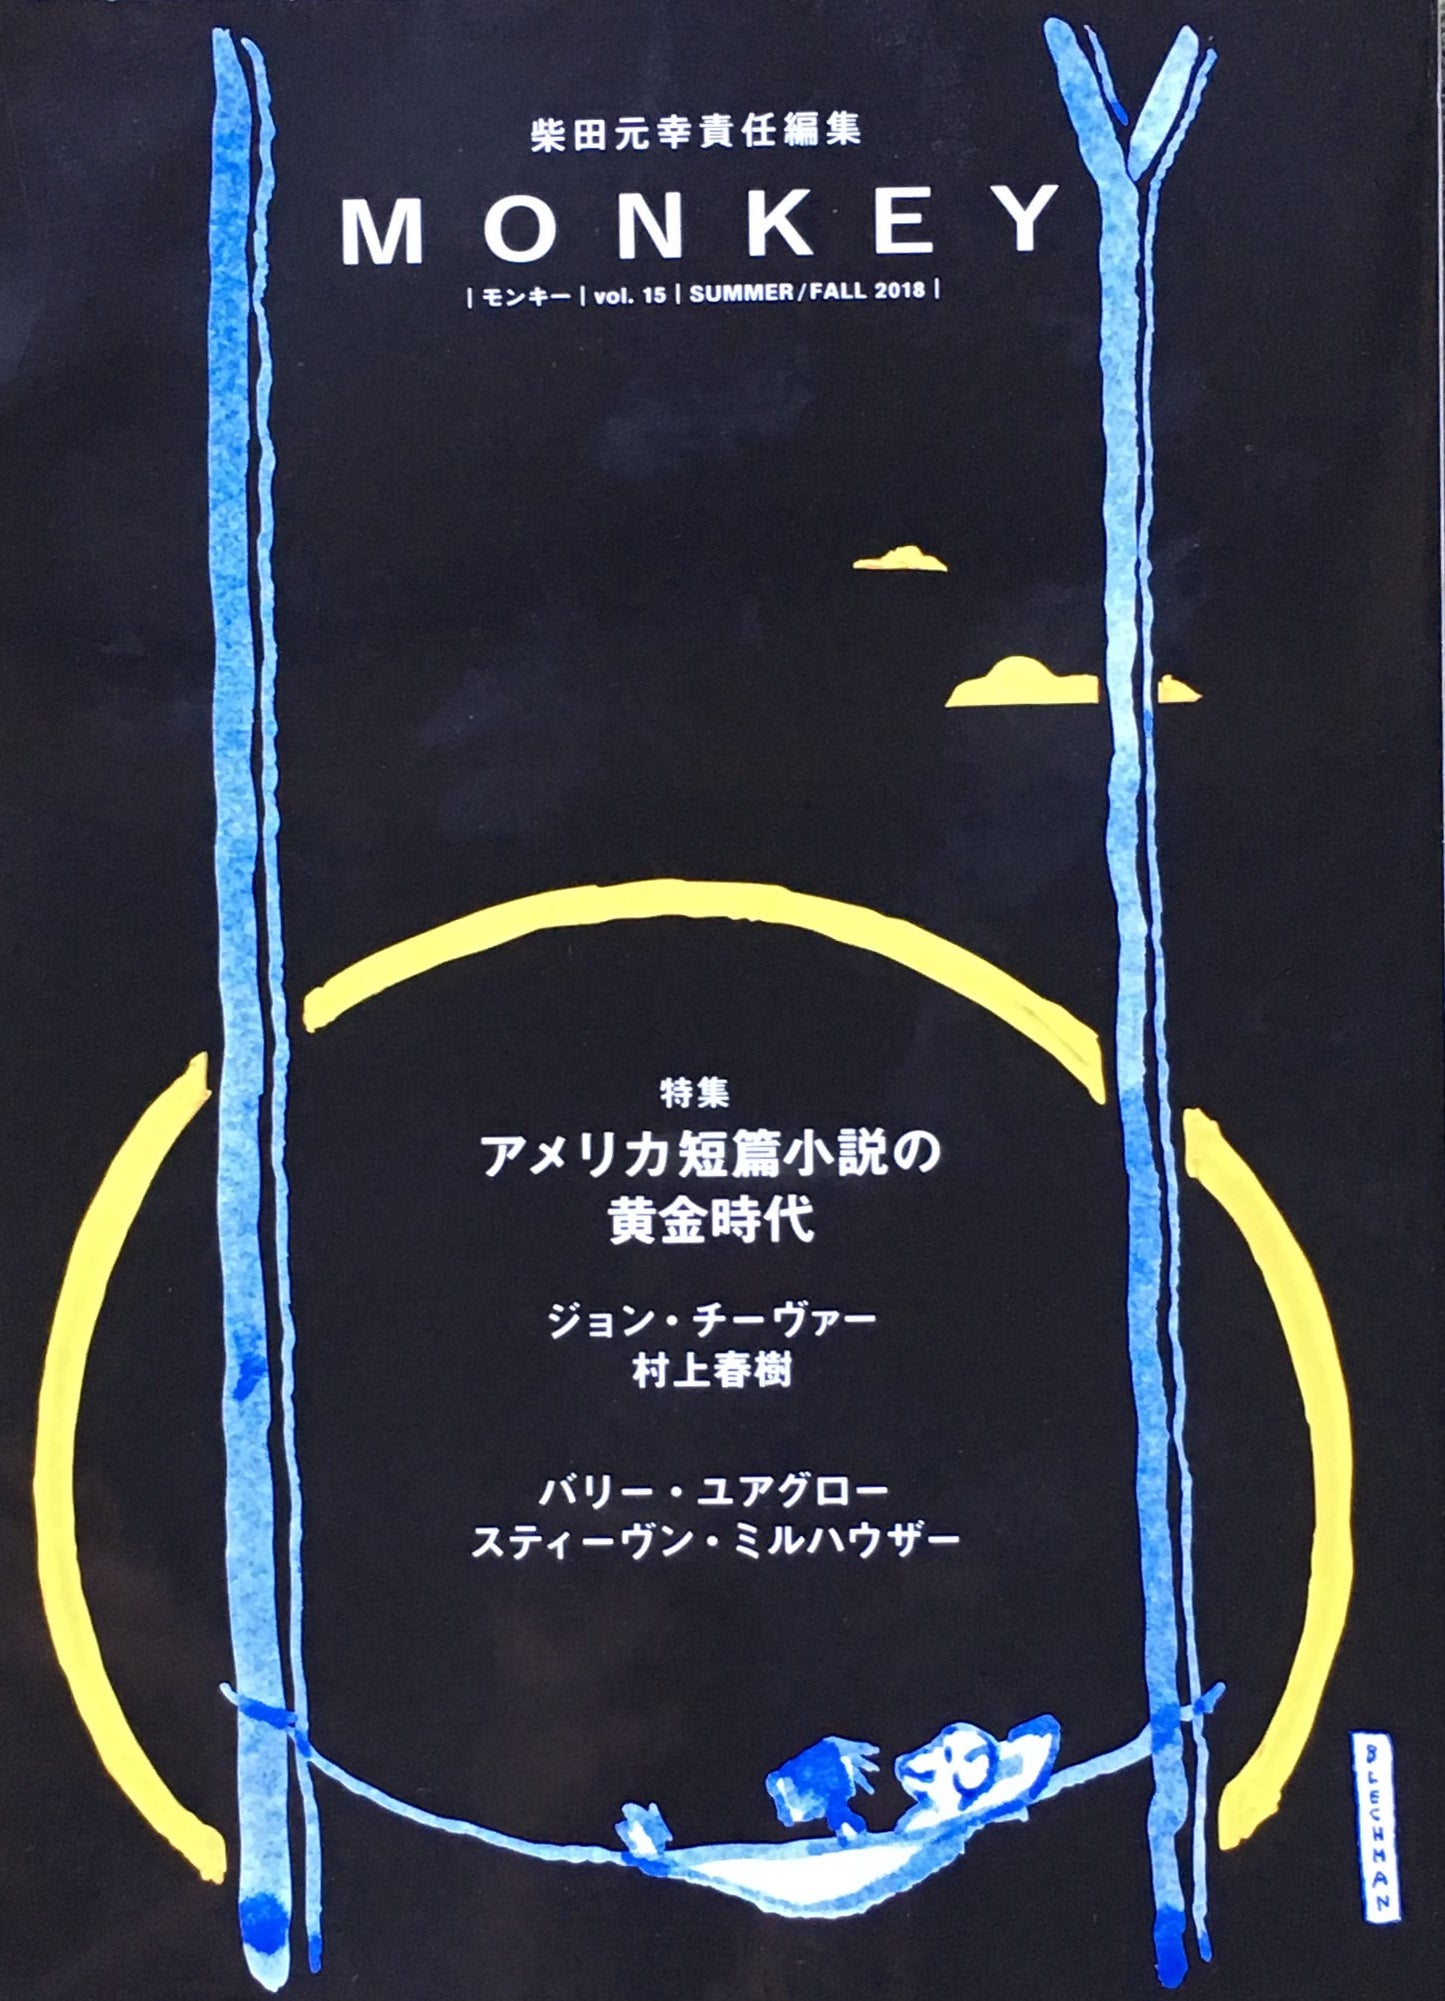 モンキー　vol.15 summer/fall 2018 柴田元幸責任編集